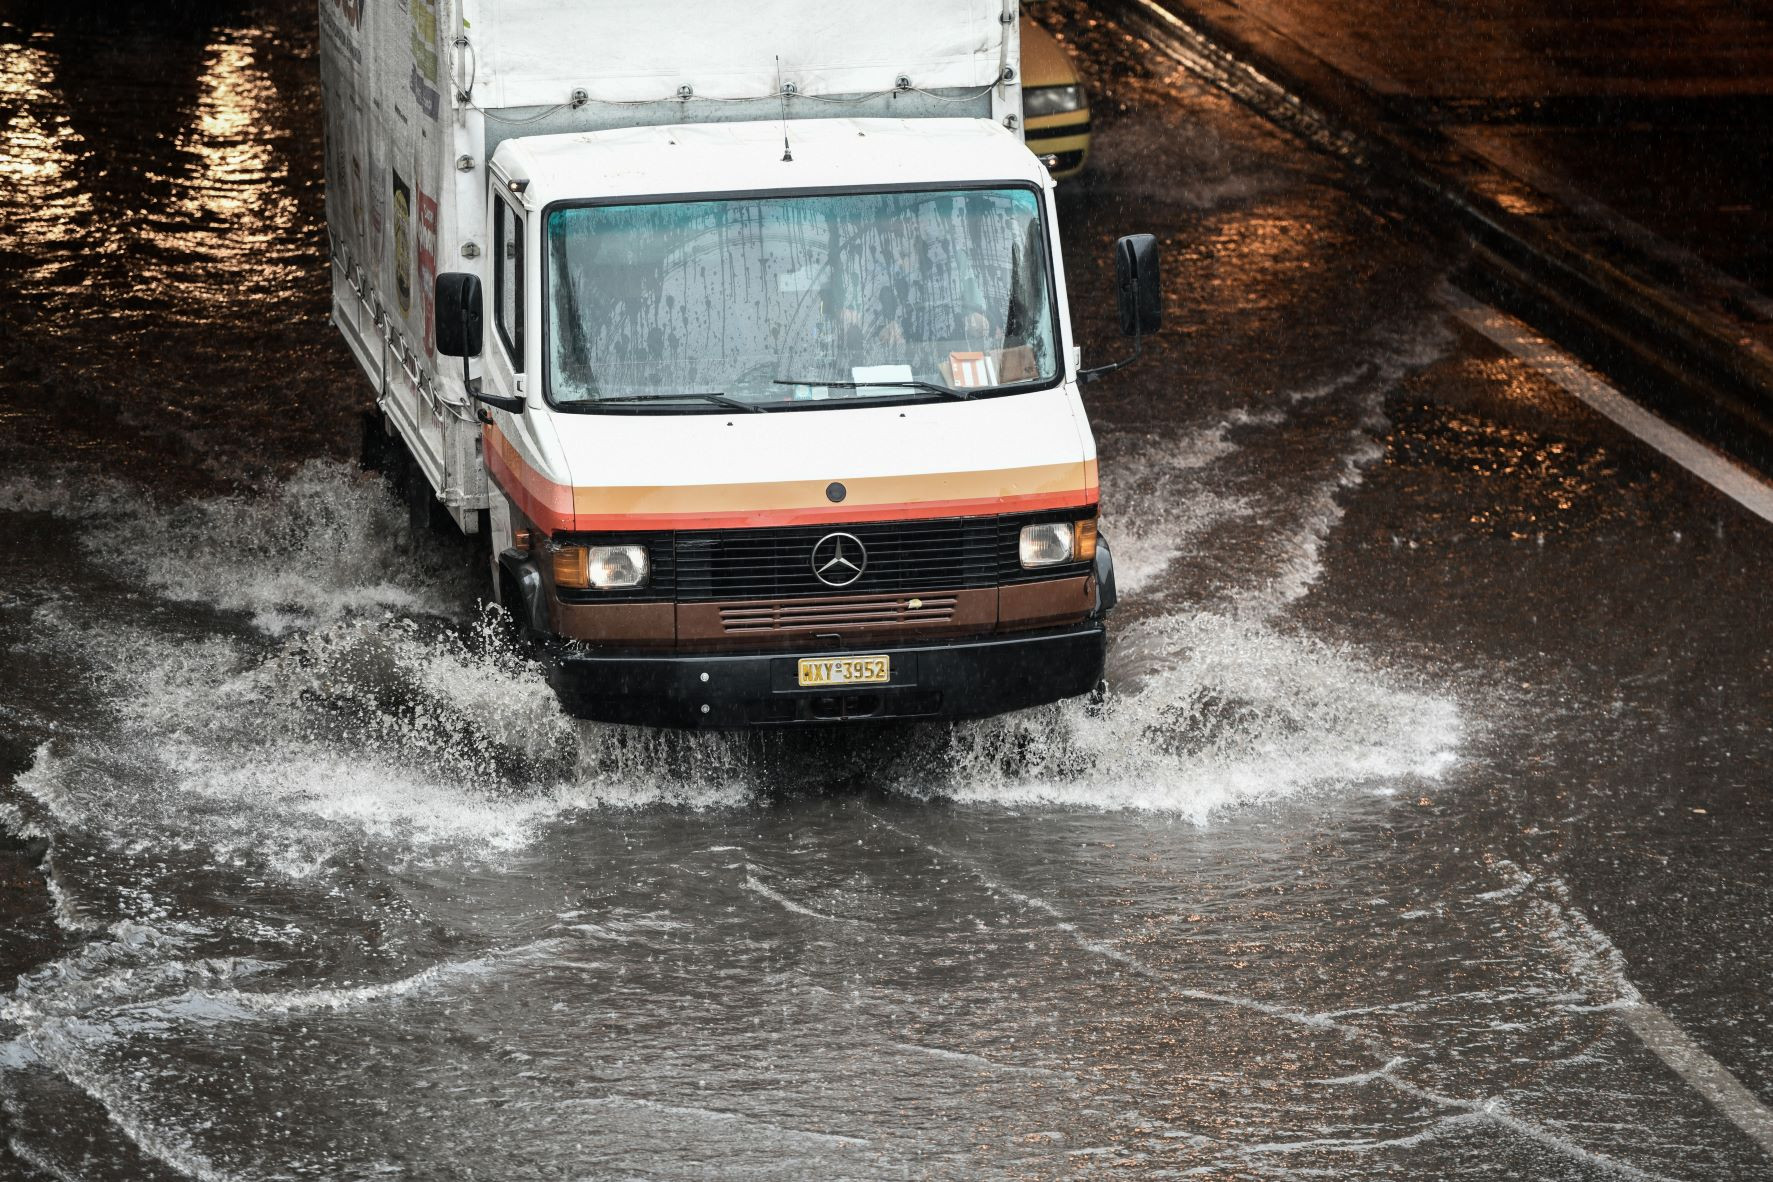 Προβλήματα από την βροχόπτωση σε Θεσσαλονίκη και Κ. Μακεδονία – Σε ποια σημεία έκλεισε το οδικό δίκτυο